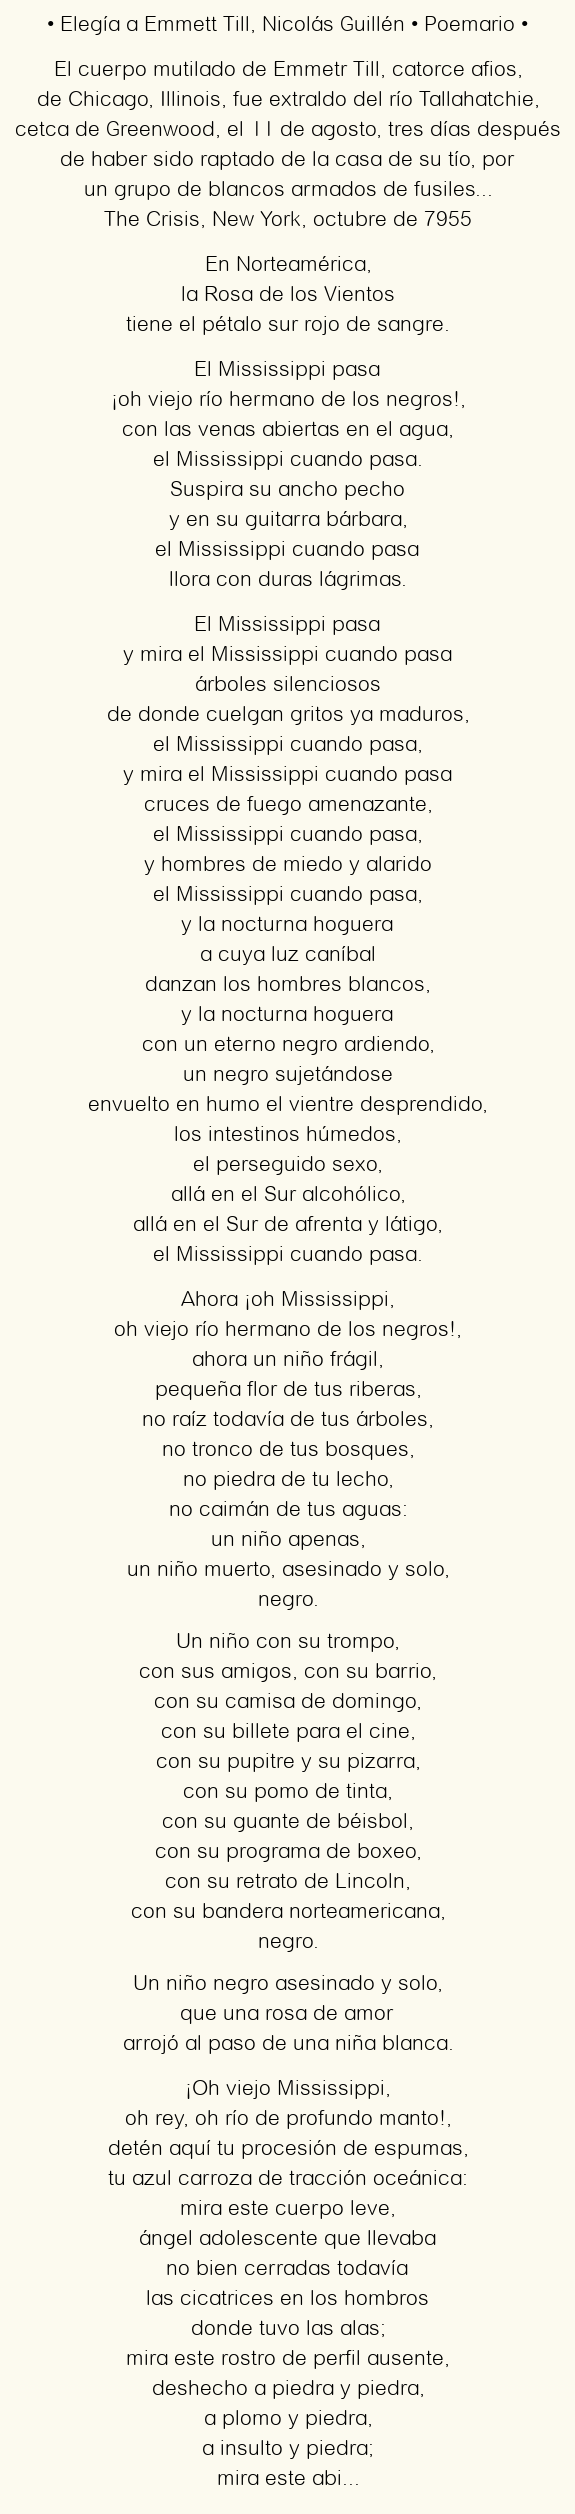 Imagen con el poema Elegía a Emmett Till, por Nicolás Guillén